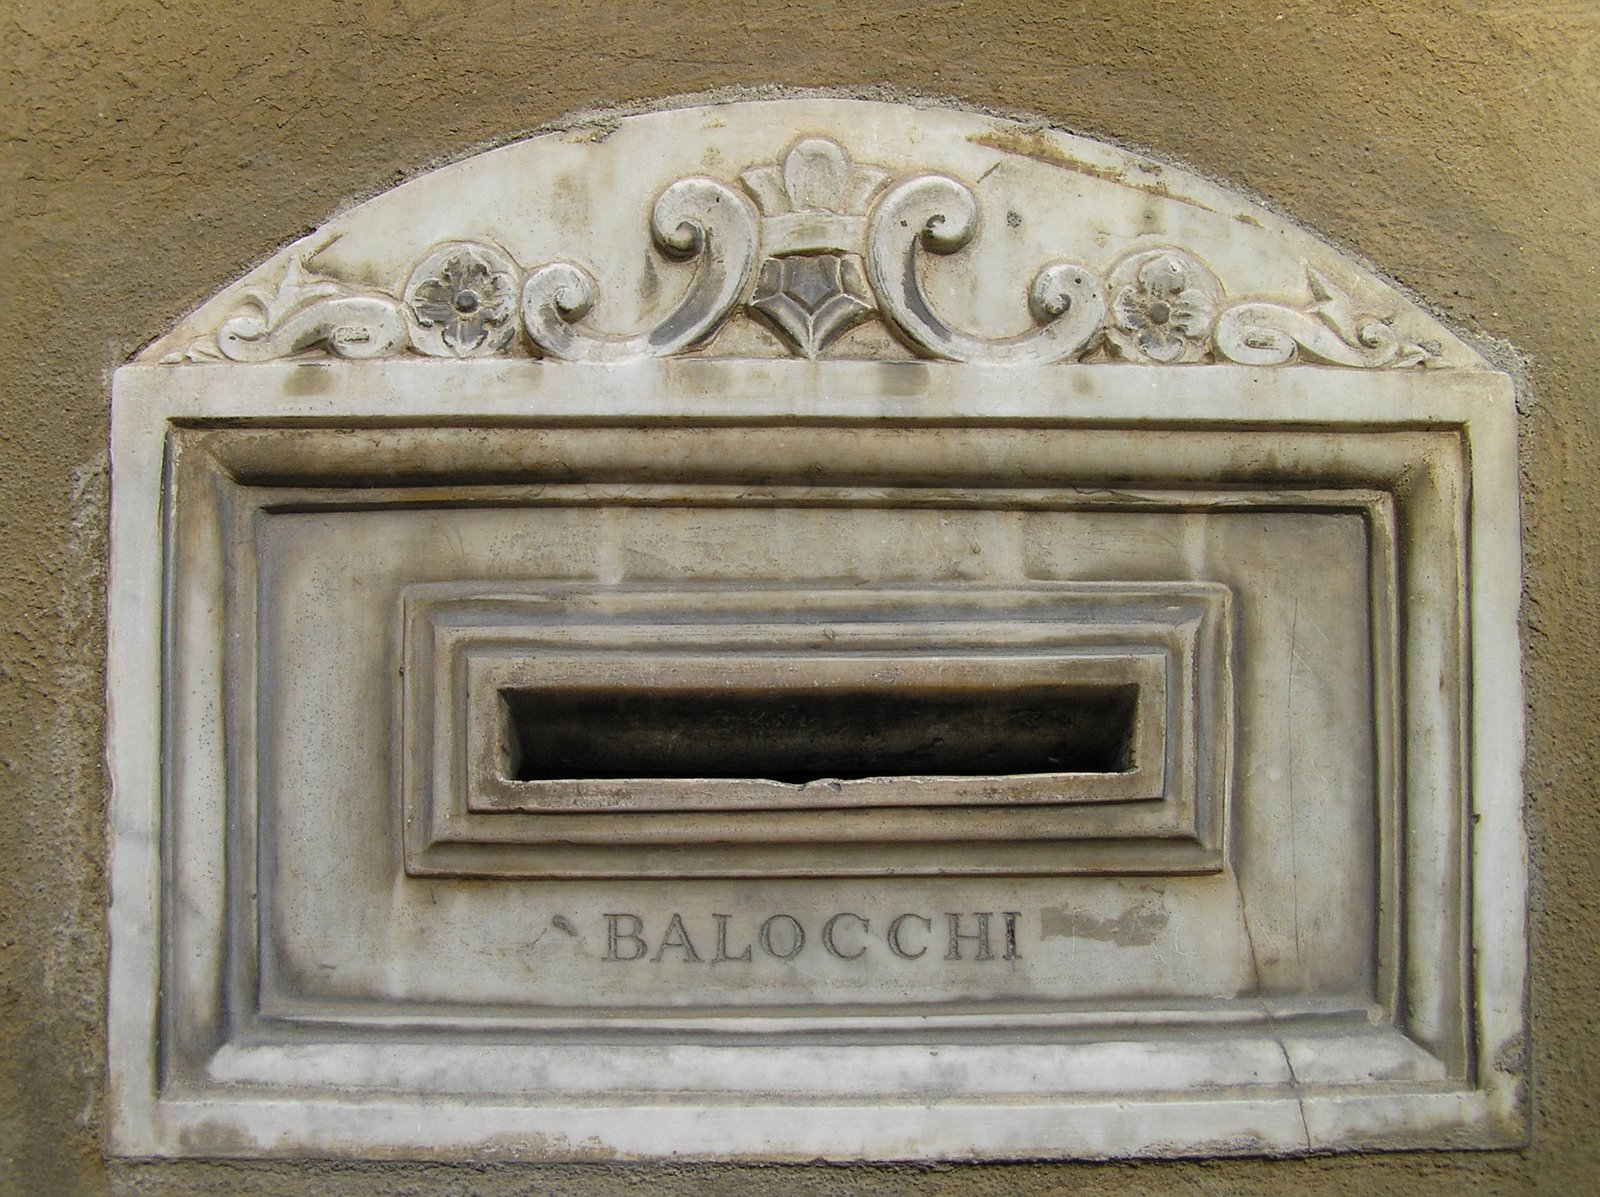 [Signor+Balocchi's+letterbox.JPG]